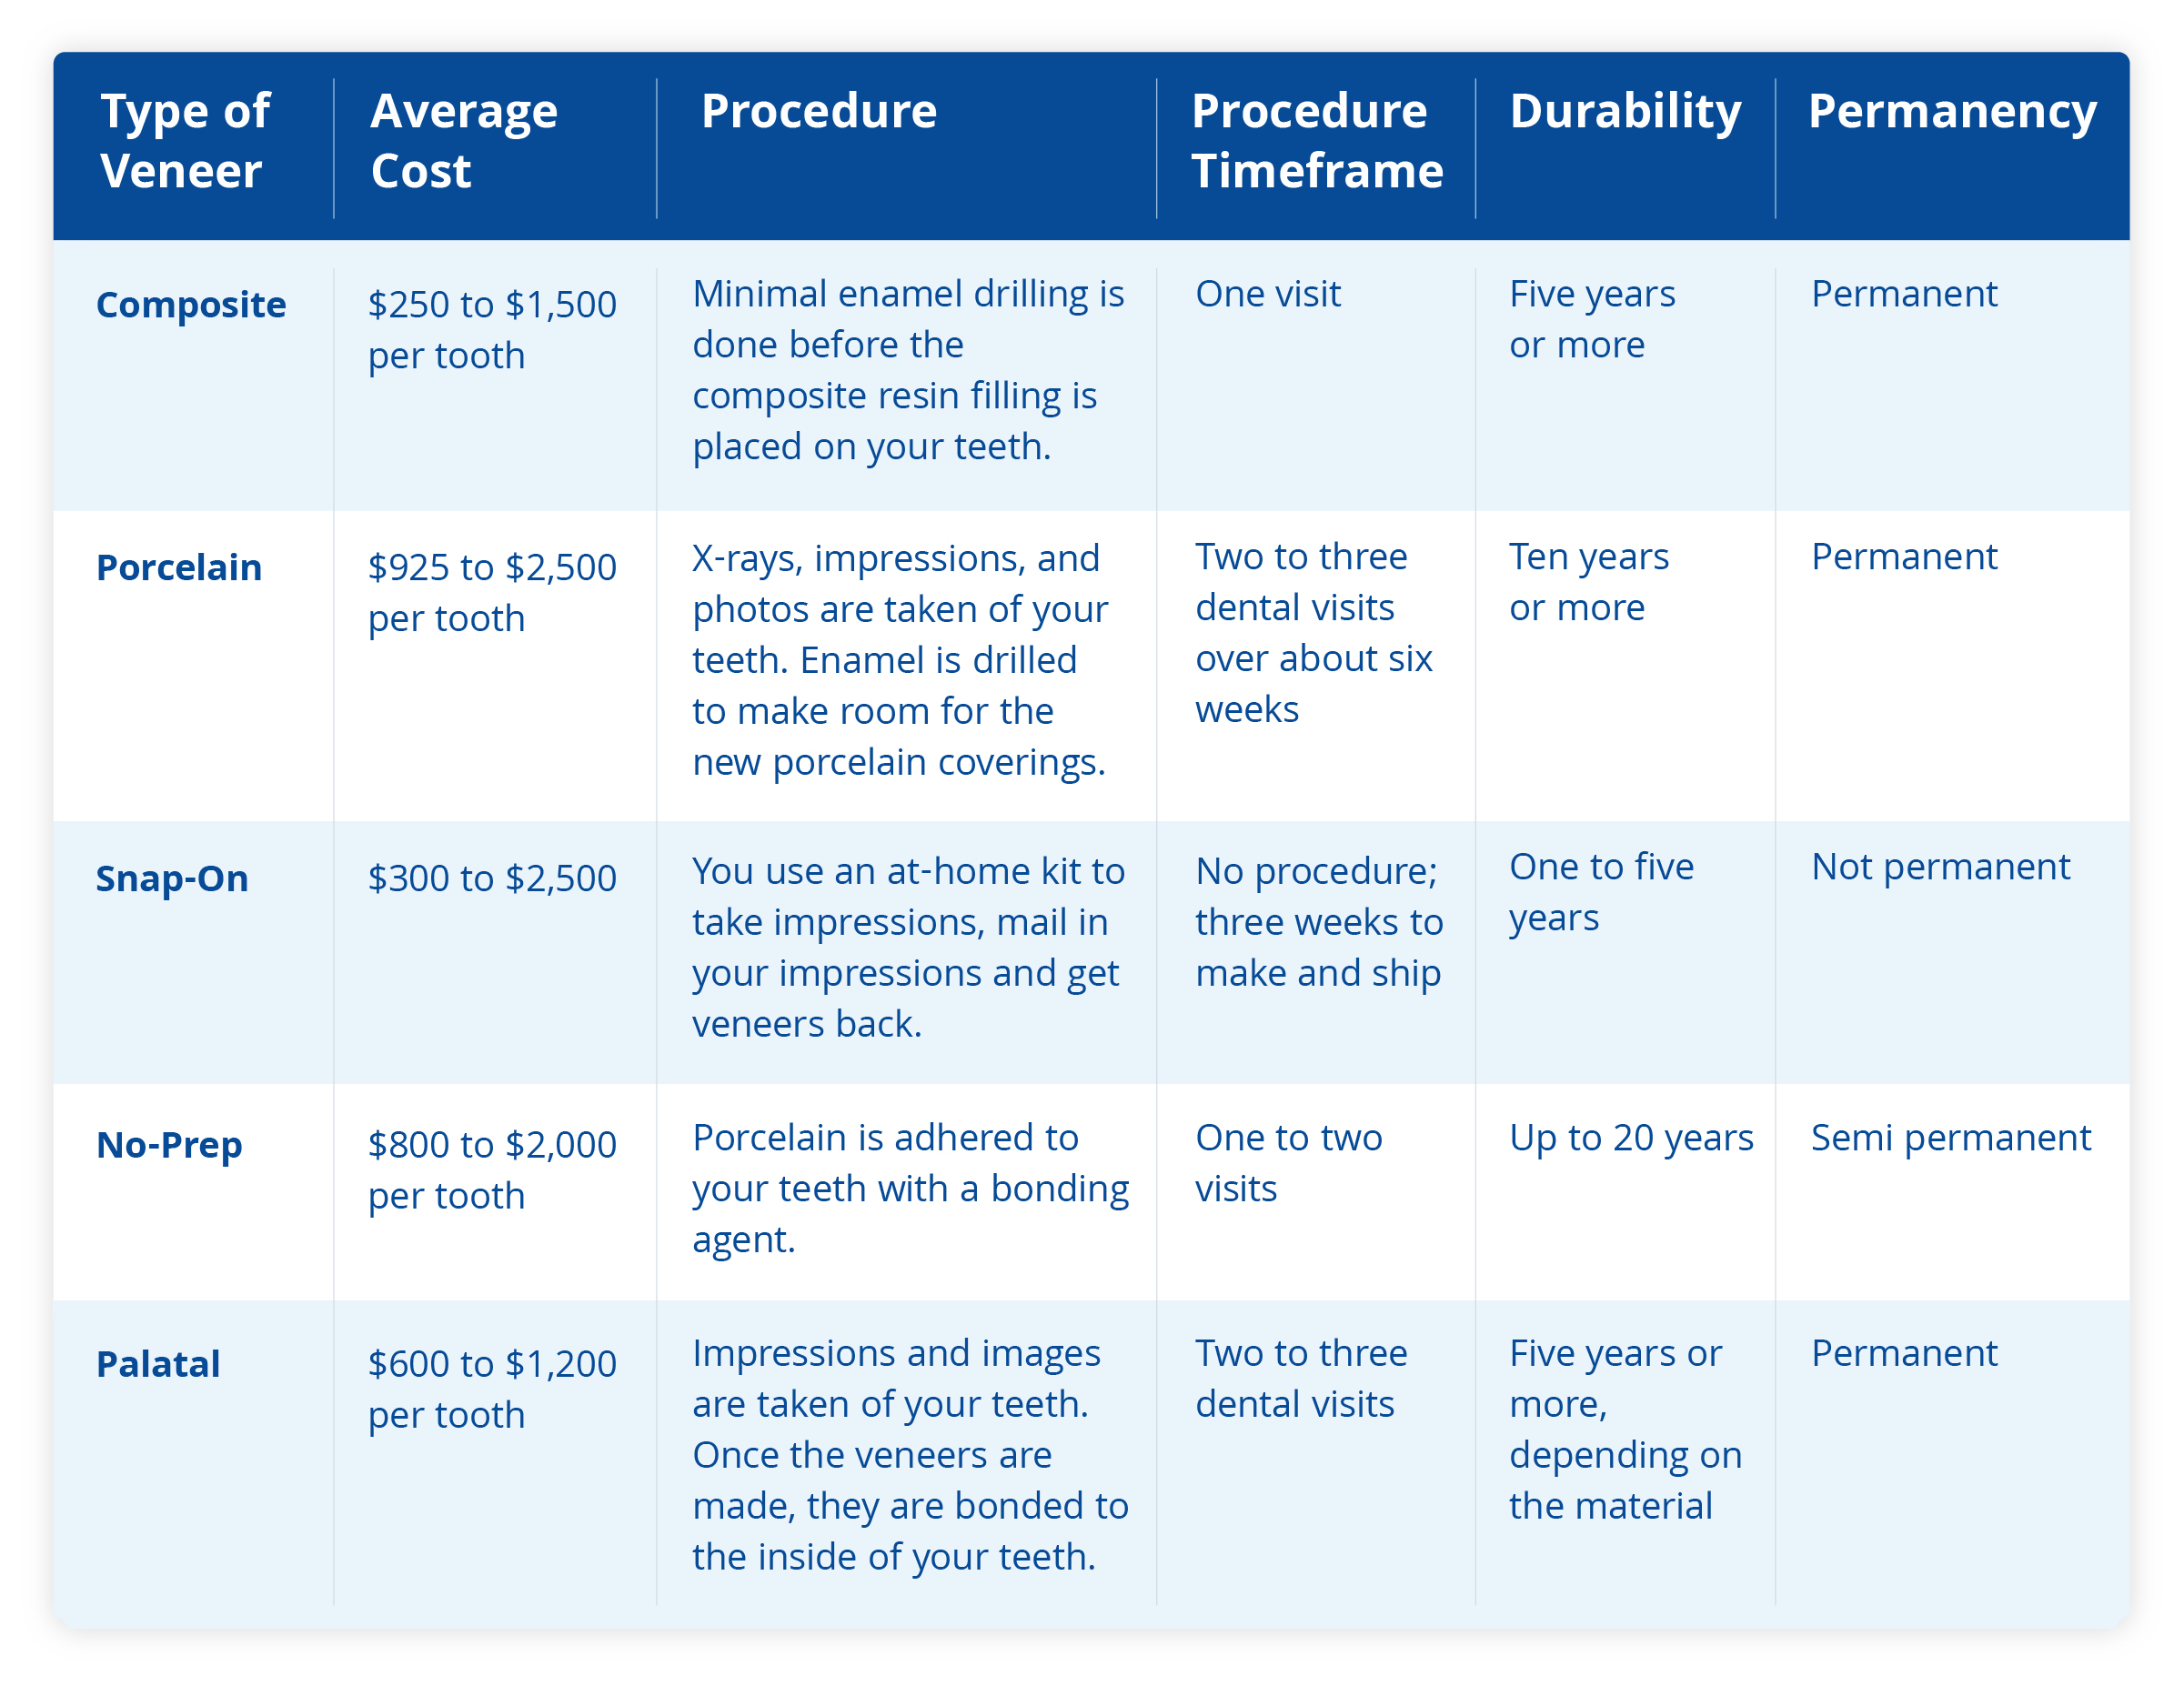 types of veneers costs and procedures